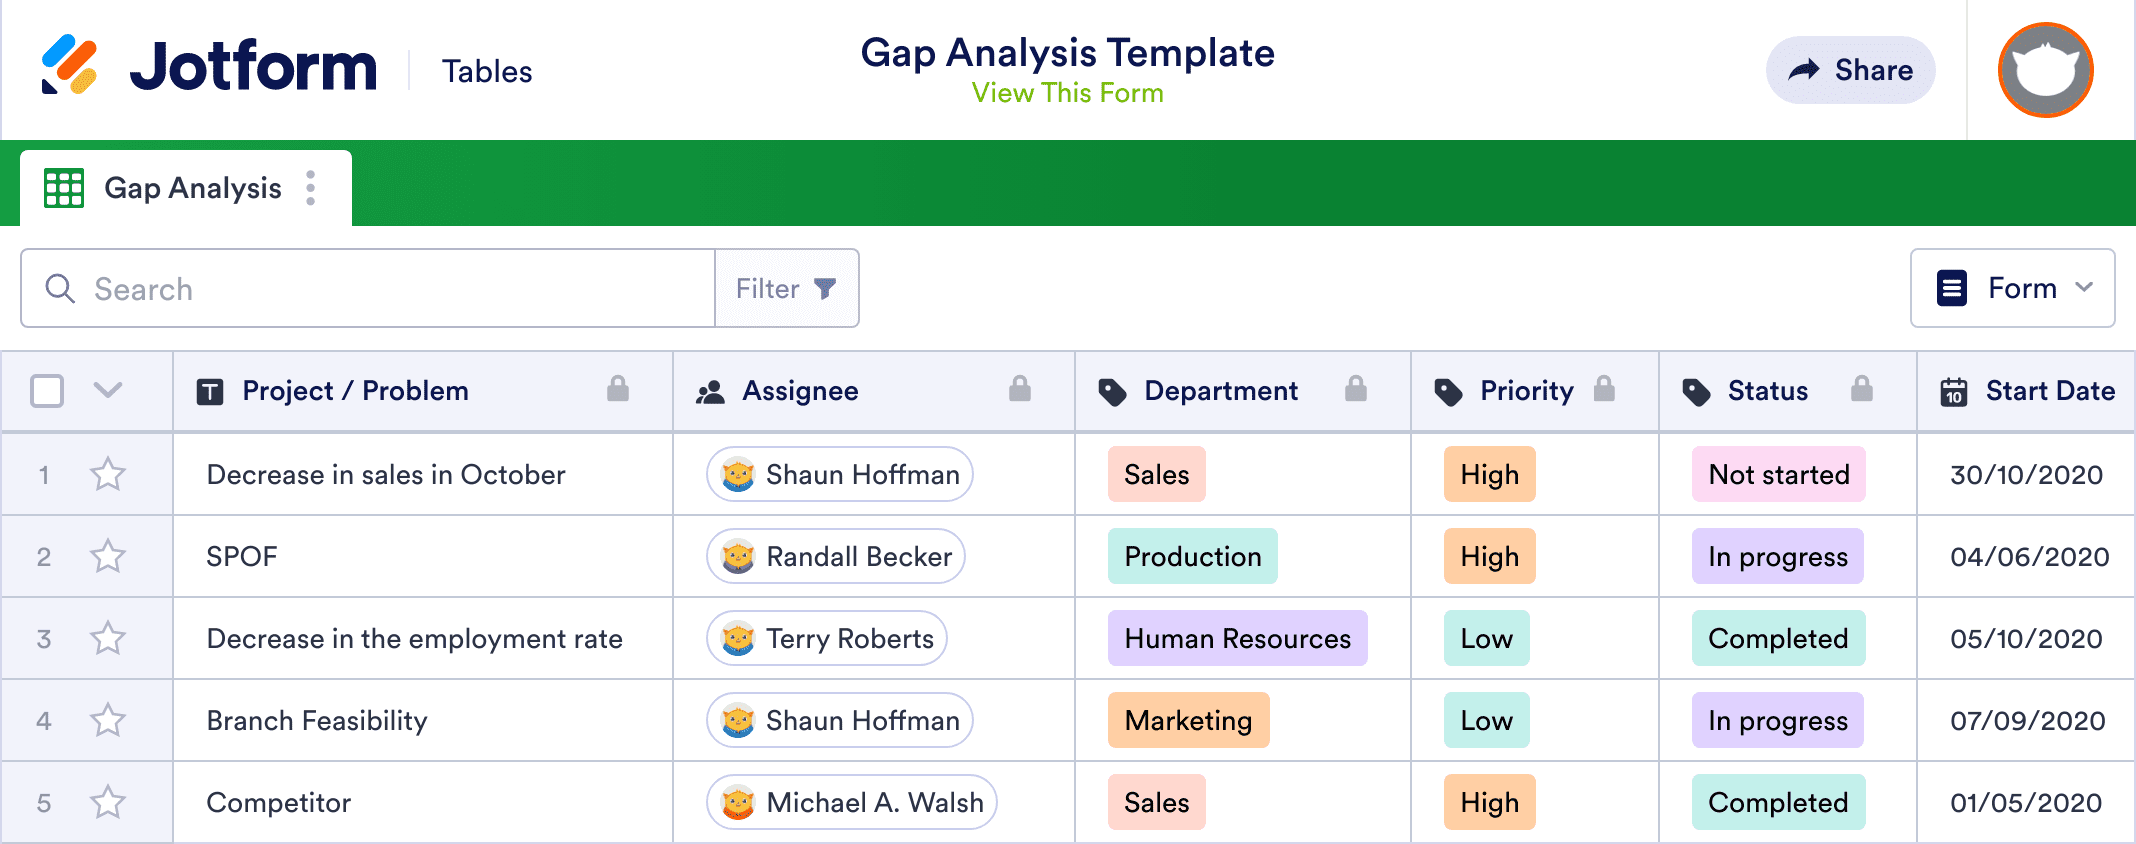 Gap Analysis Template | Jotform Tables